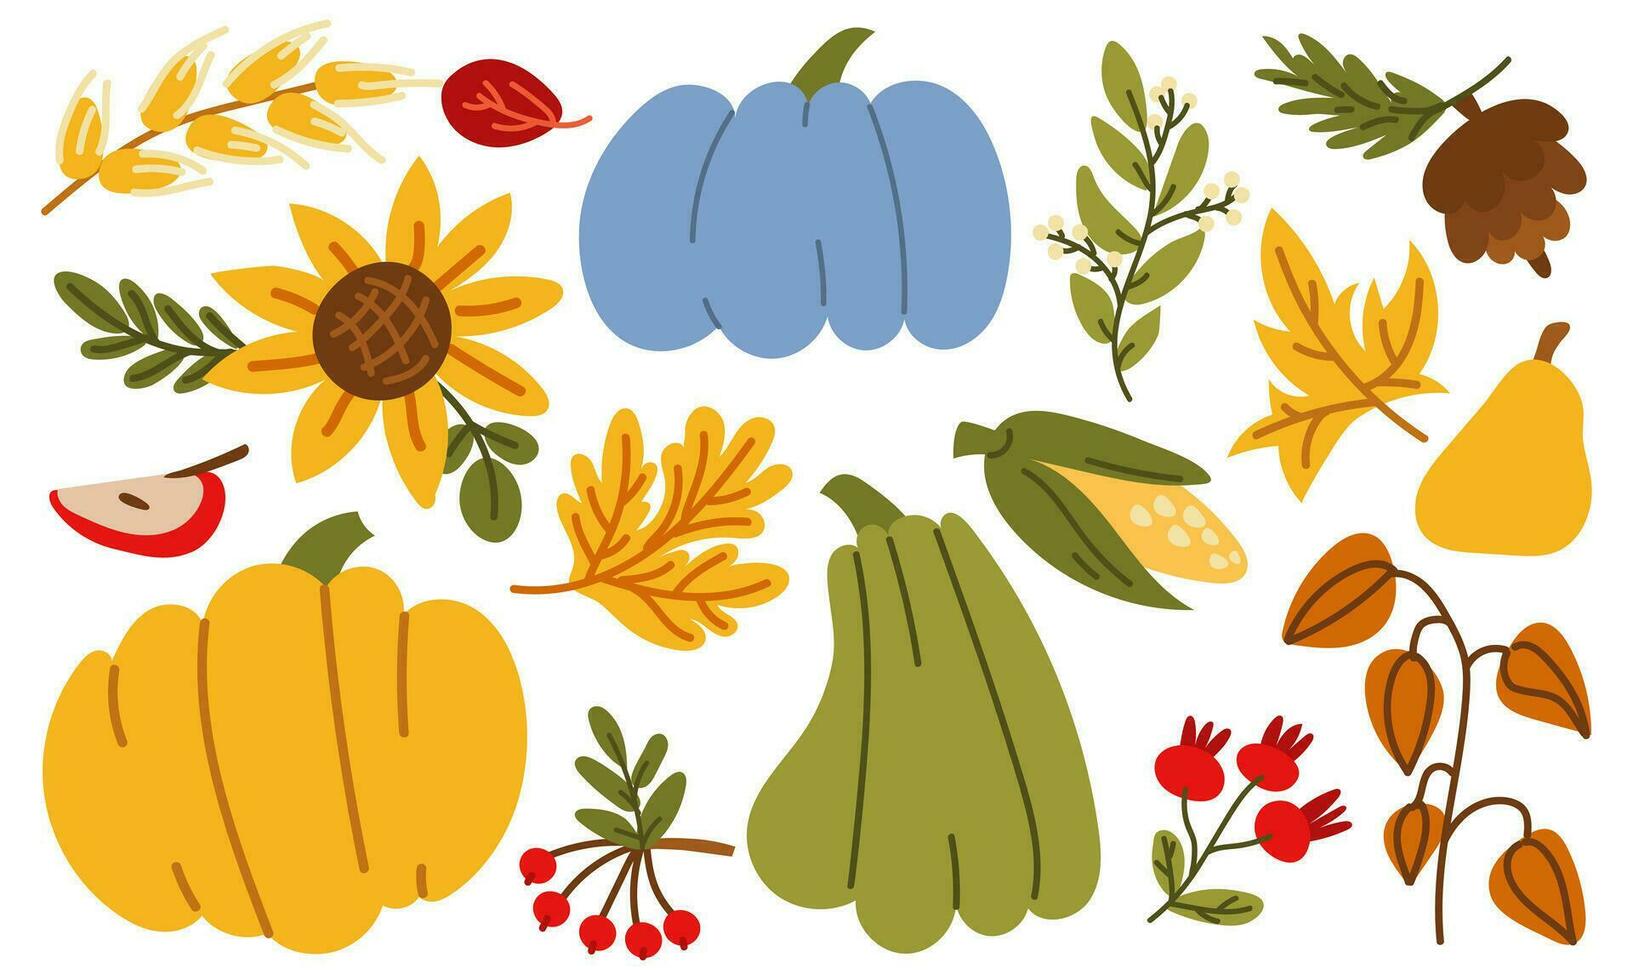 el otoño cosecha tiene comenzado. vector colección de verduras, frutas y bayas de el granja con calabazas, girasoles, manzanas, maíz, peras, physalis, arándanos gracioso otoño ilustración